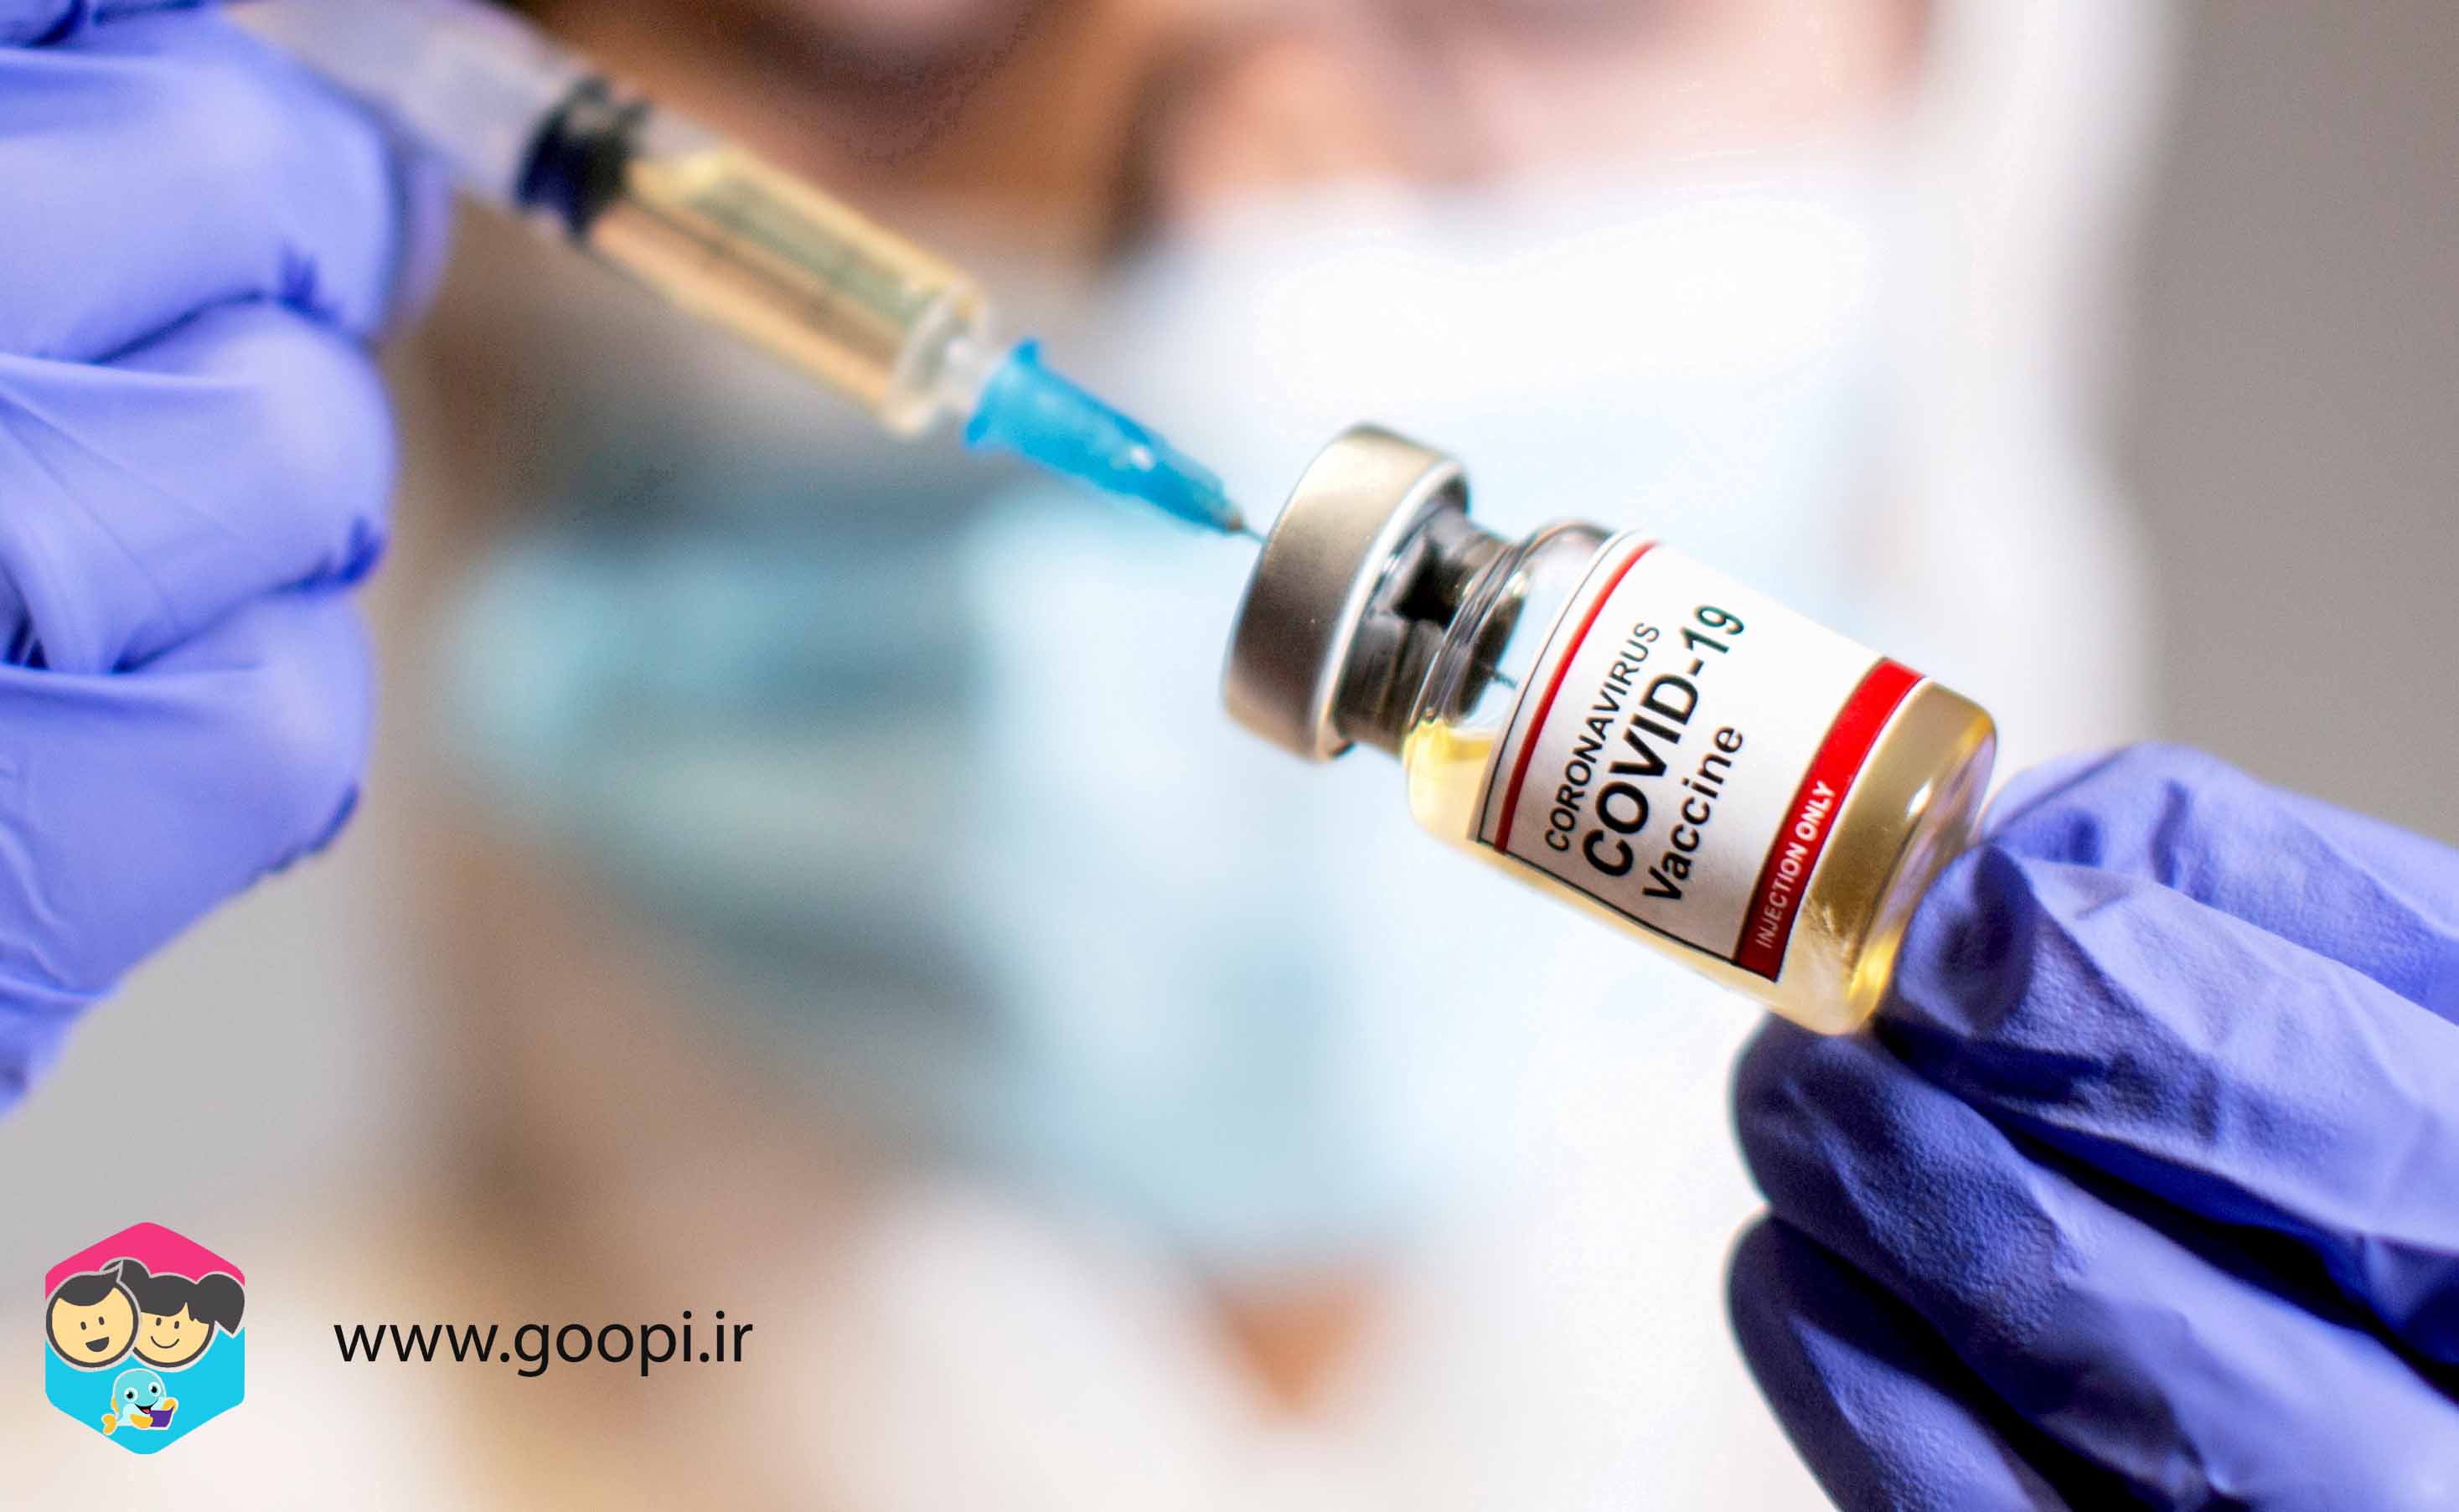 ابراز امیدواری برای اتمام واکسیناسیون ظرف ۳ ماه آتی | مجله گوپی